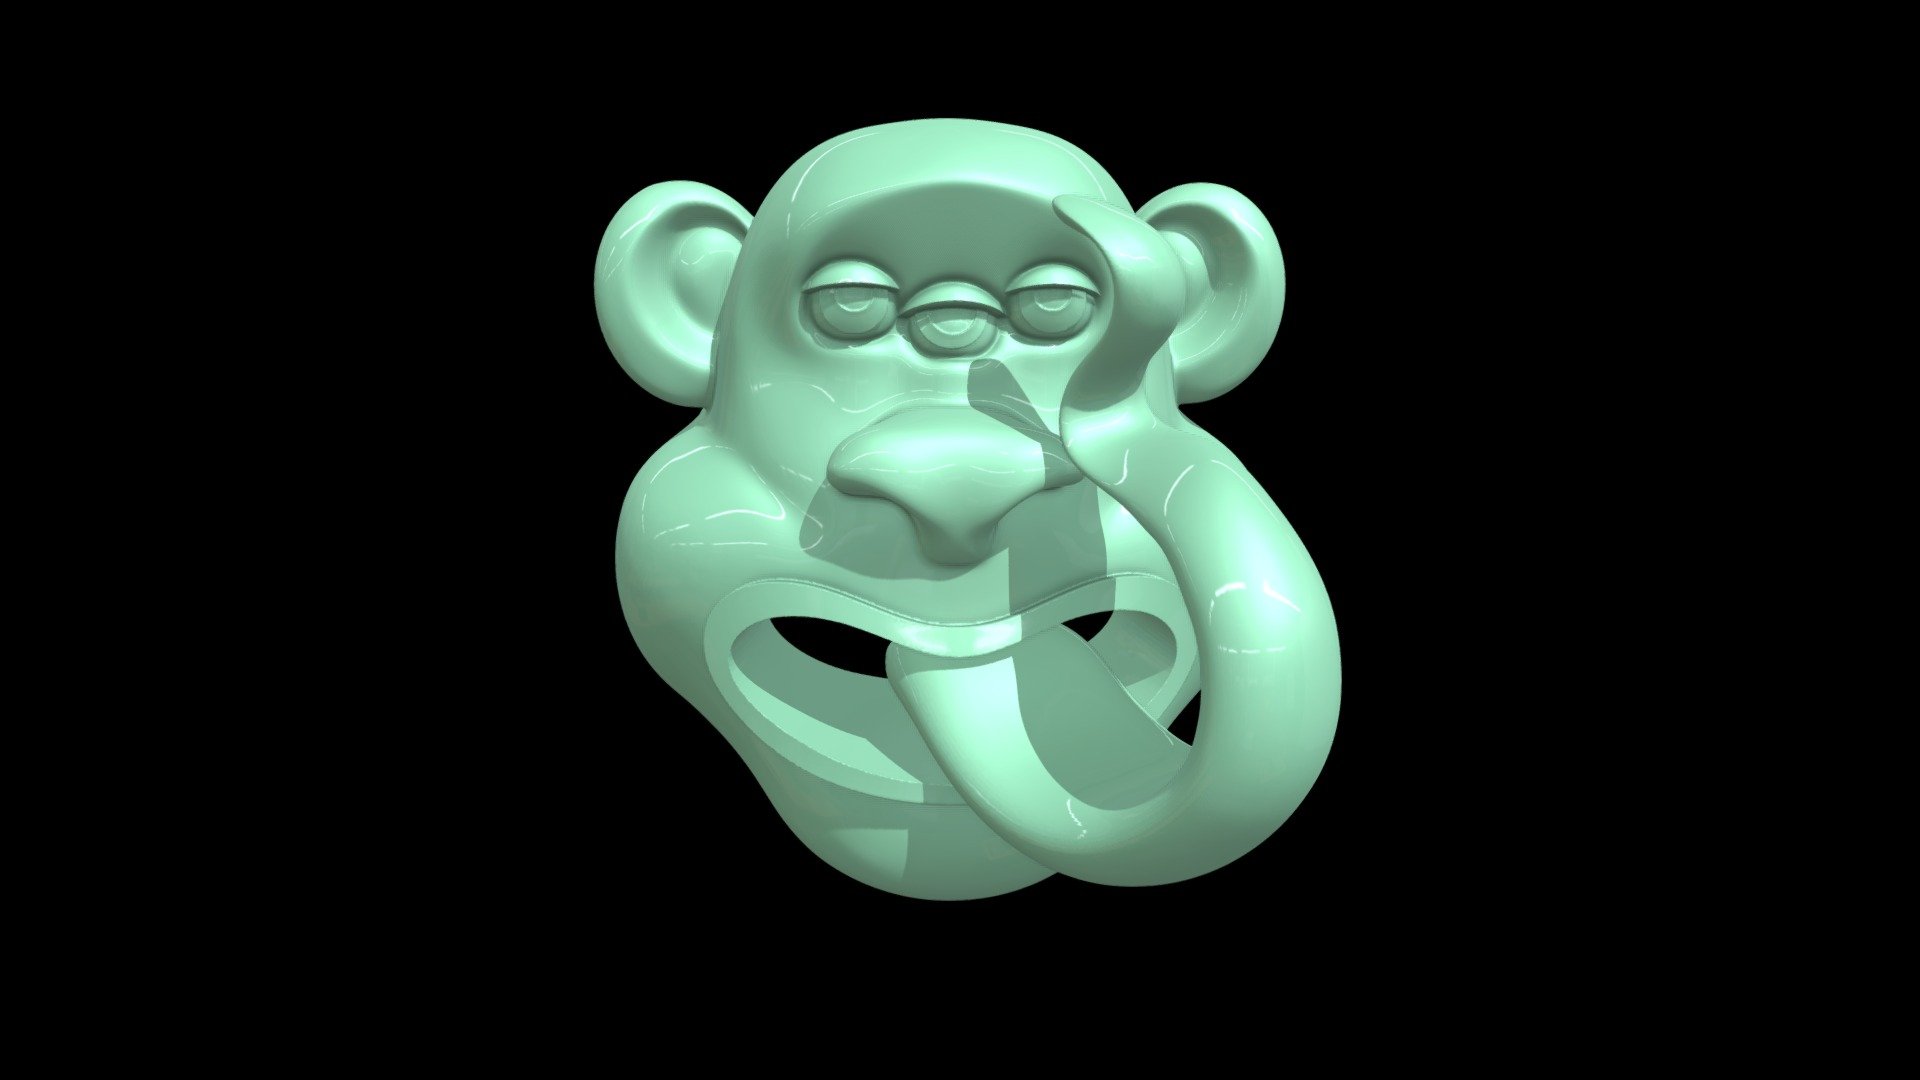 Monkie - Design for resin 3D printing.